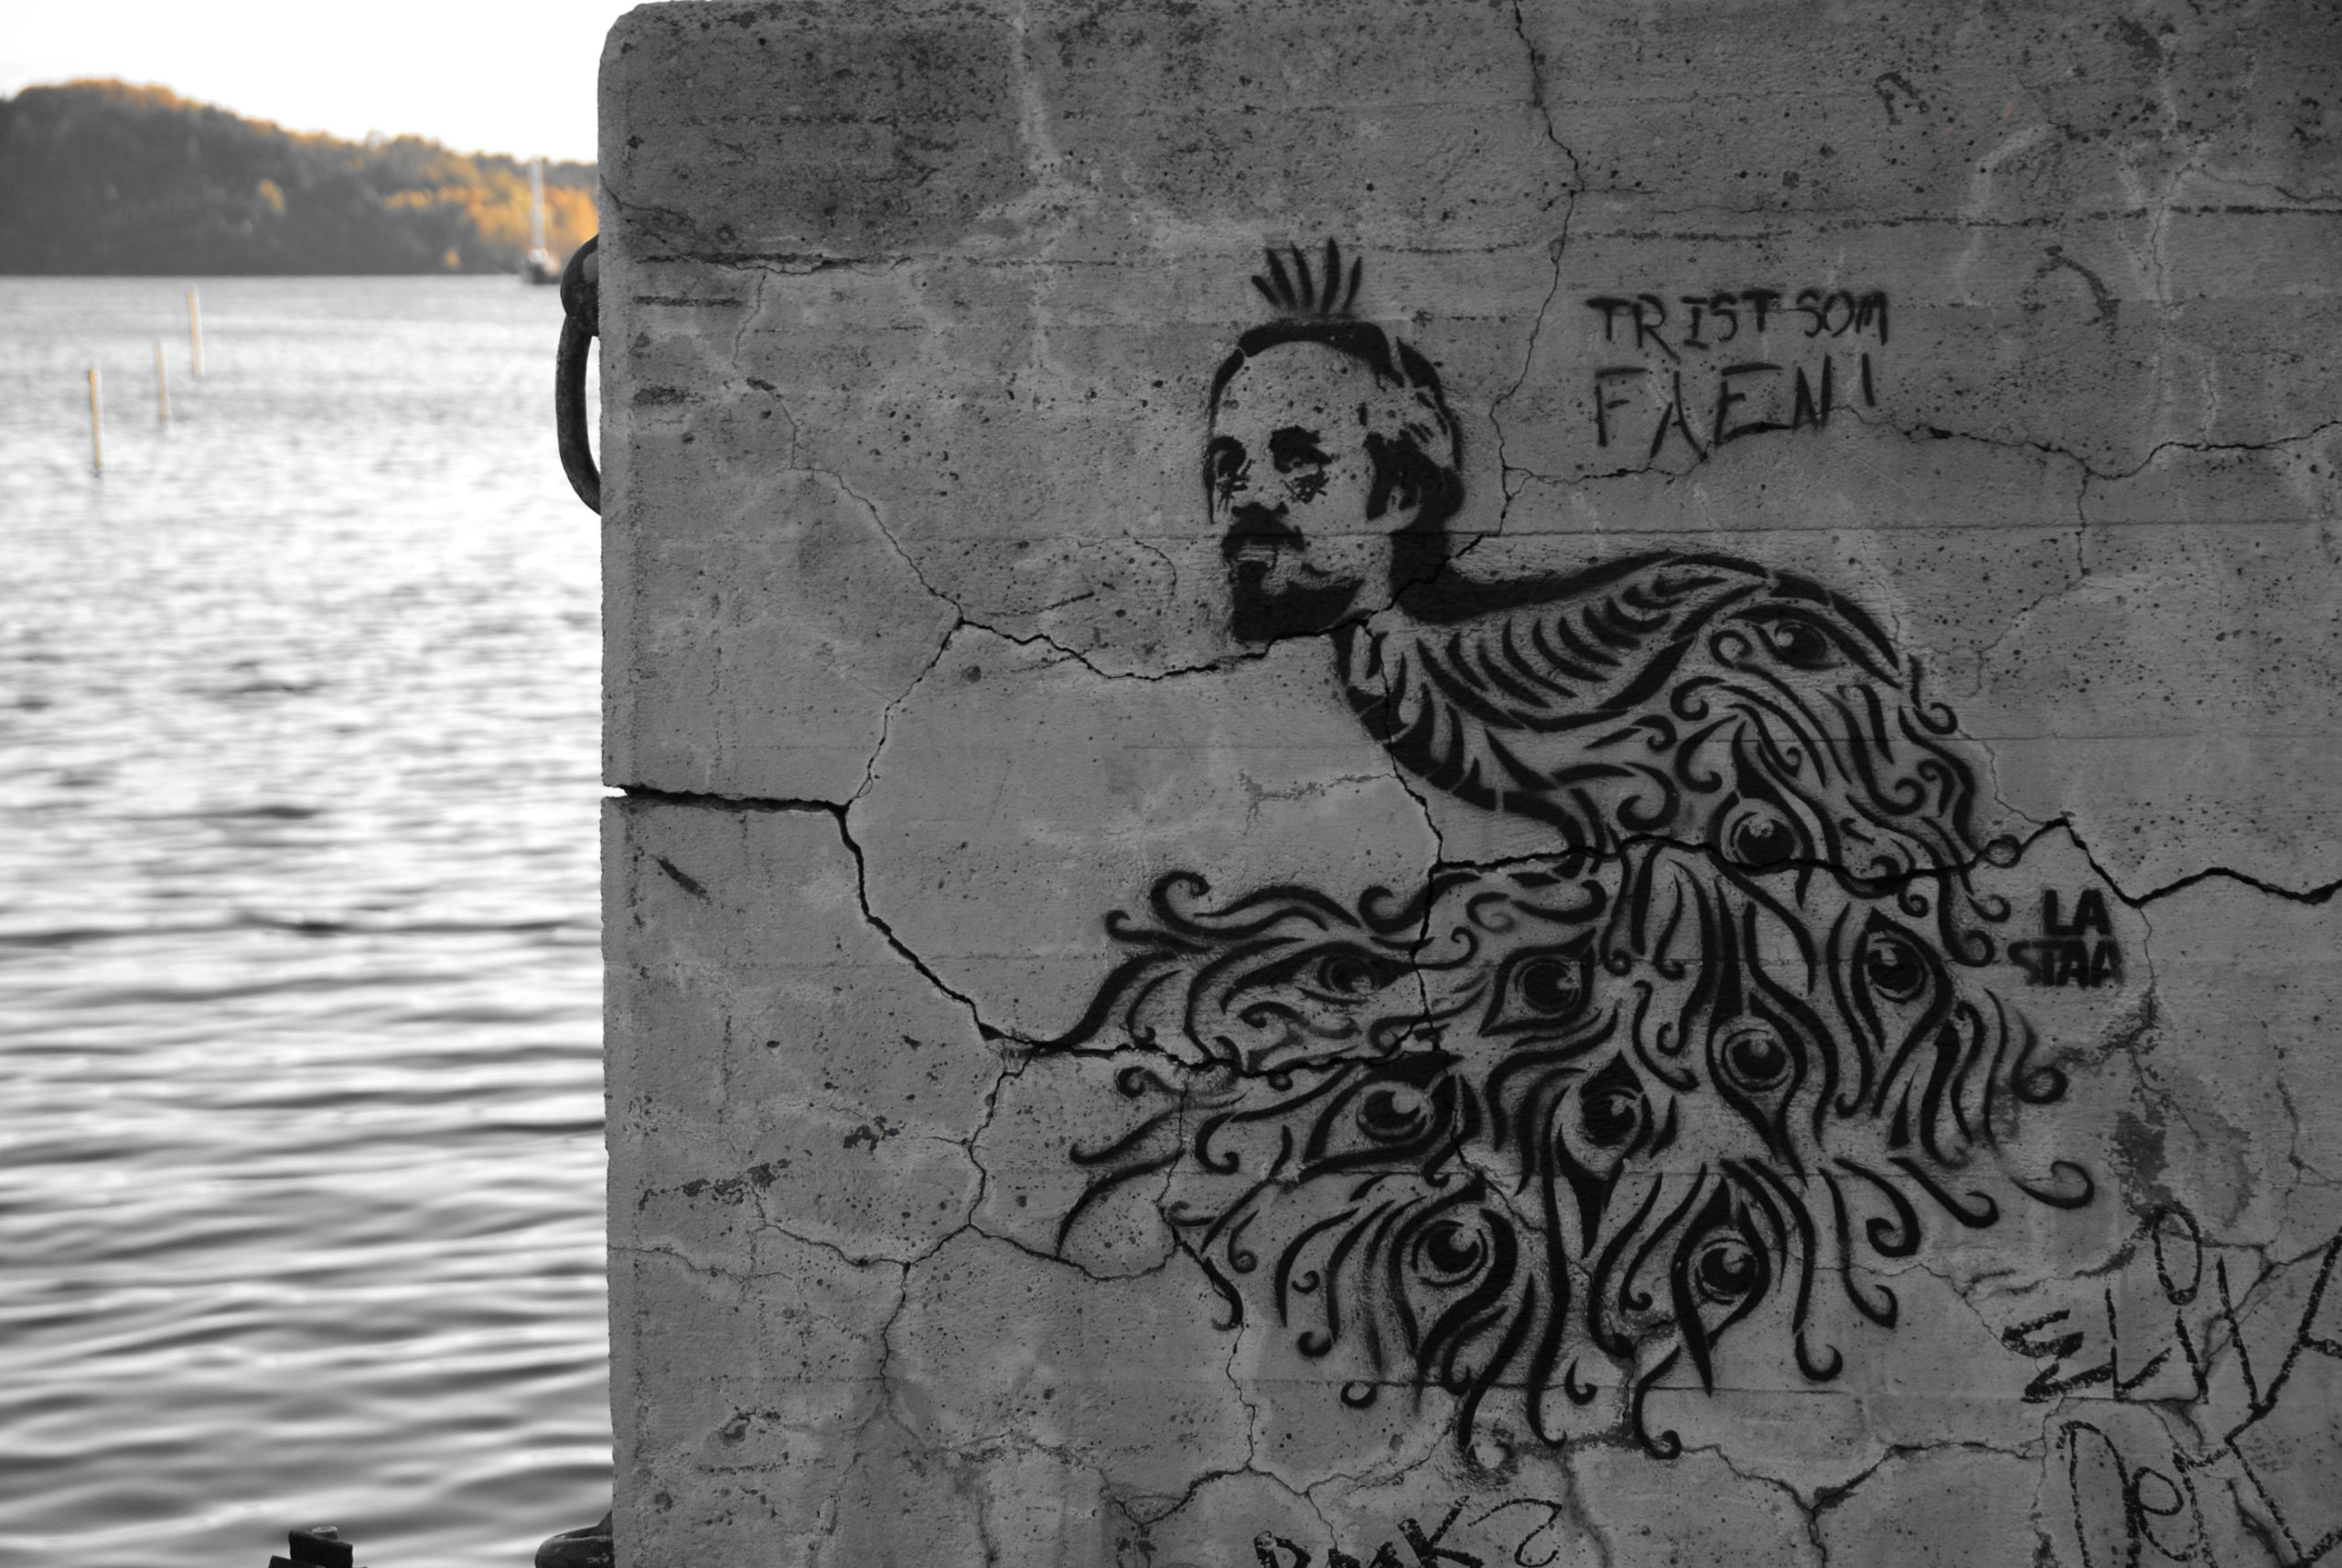 Bilde i nesten svart-hvitt av en stencil av Ari Behn som en påfugl, med tittelen "Trist som faen". Vann i bakgrunnen.